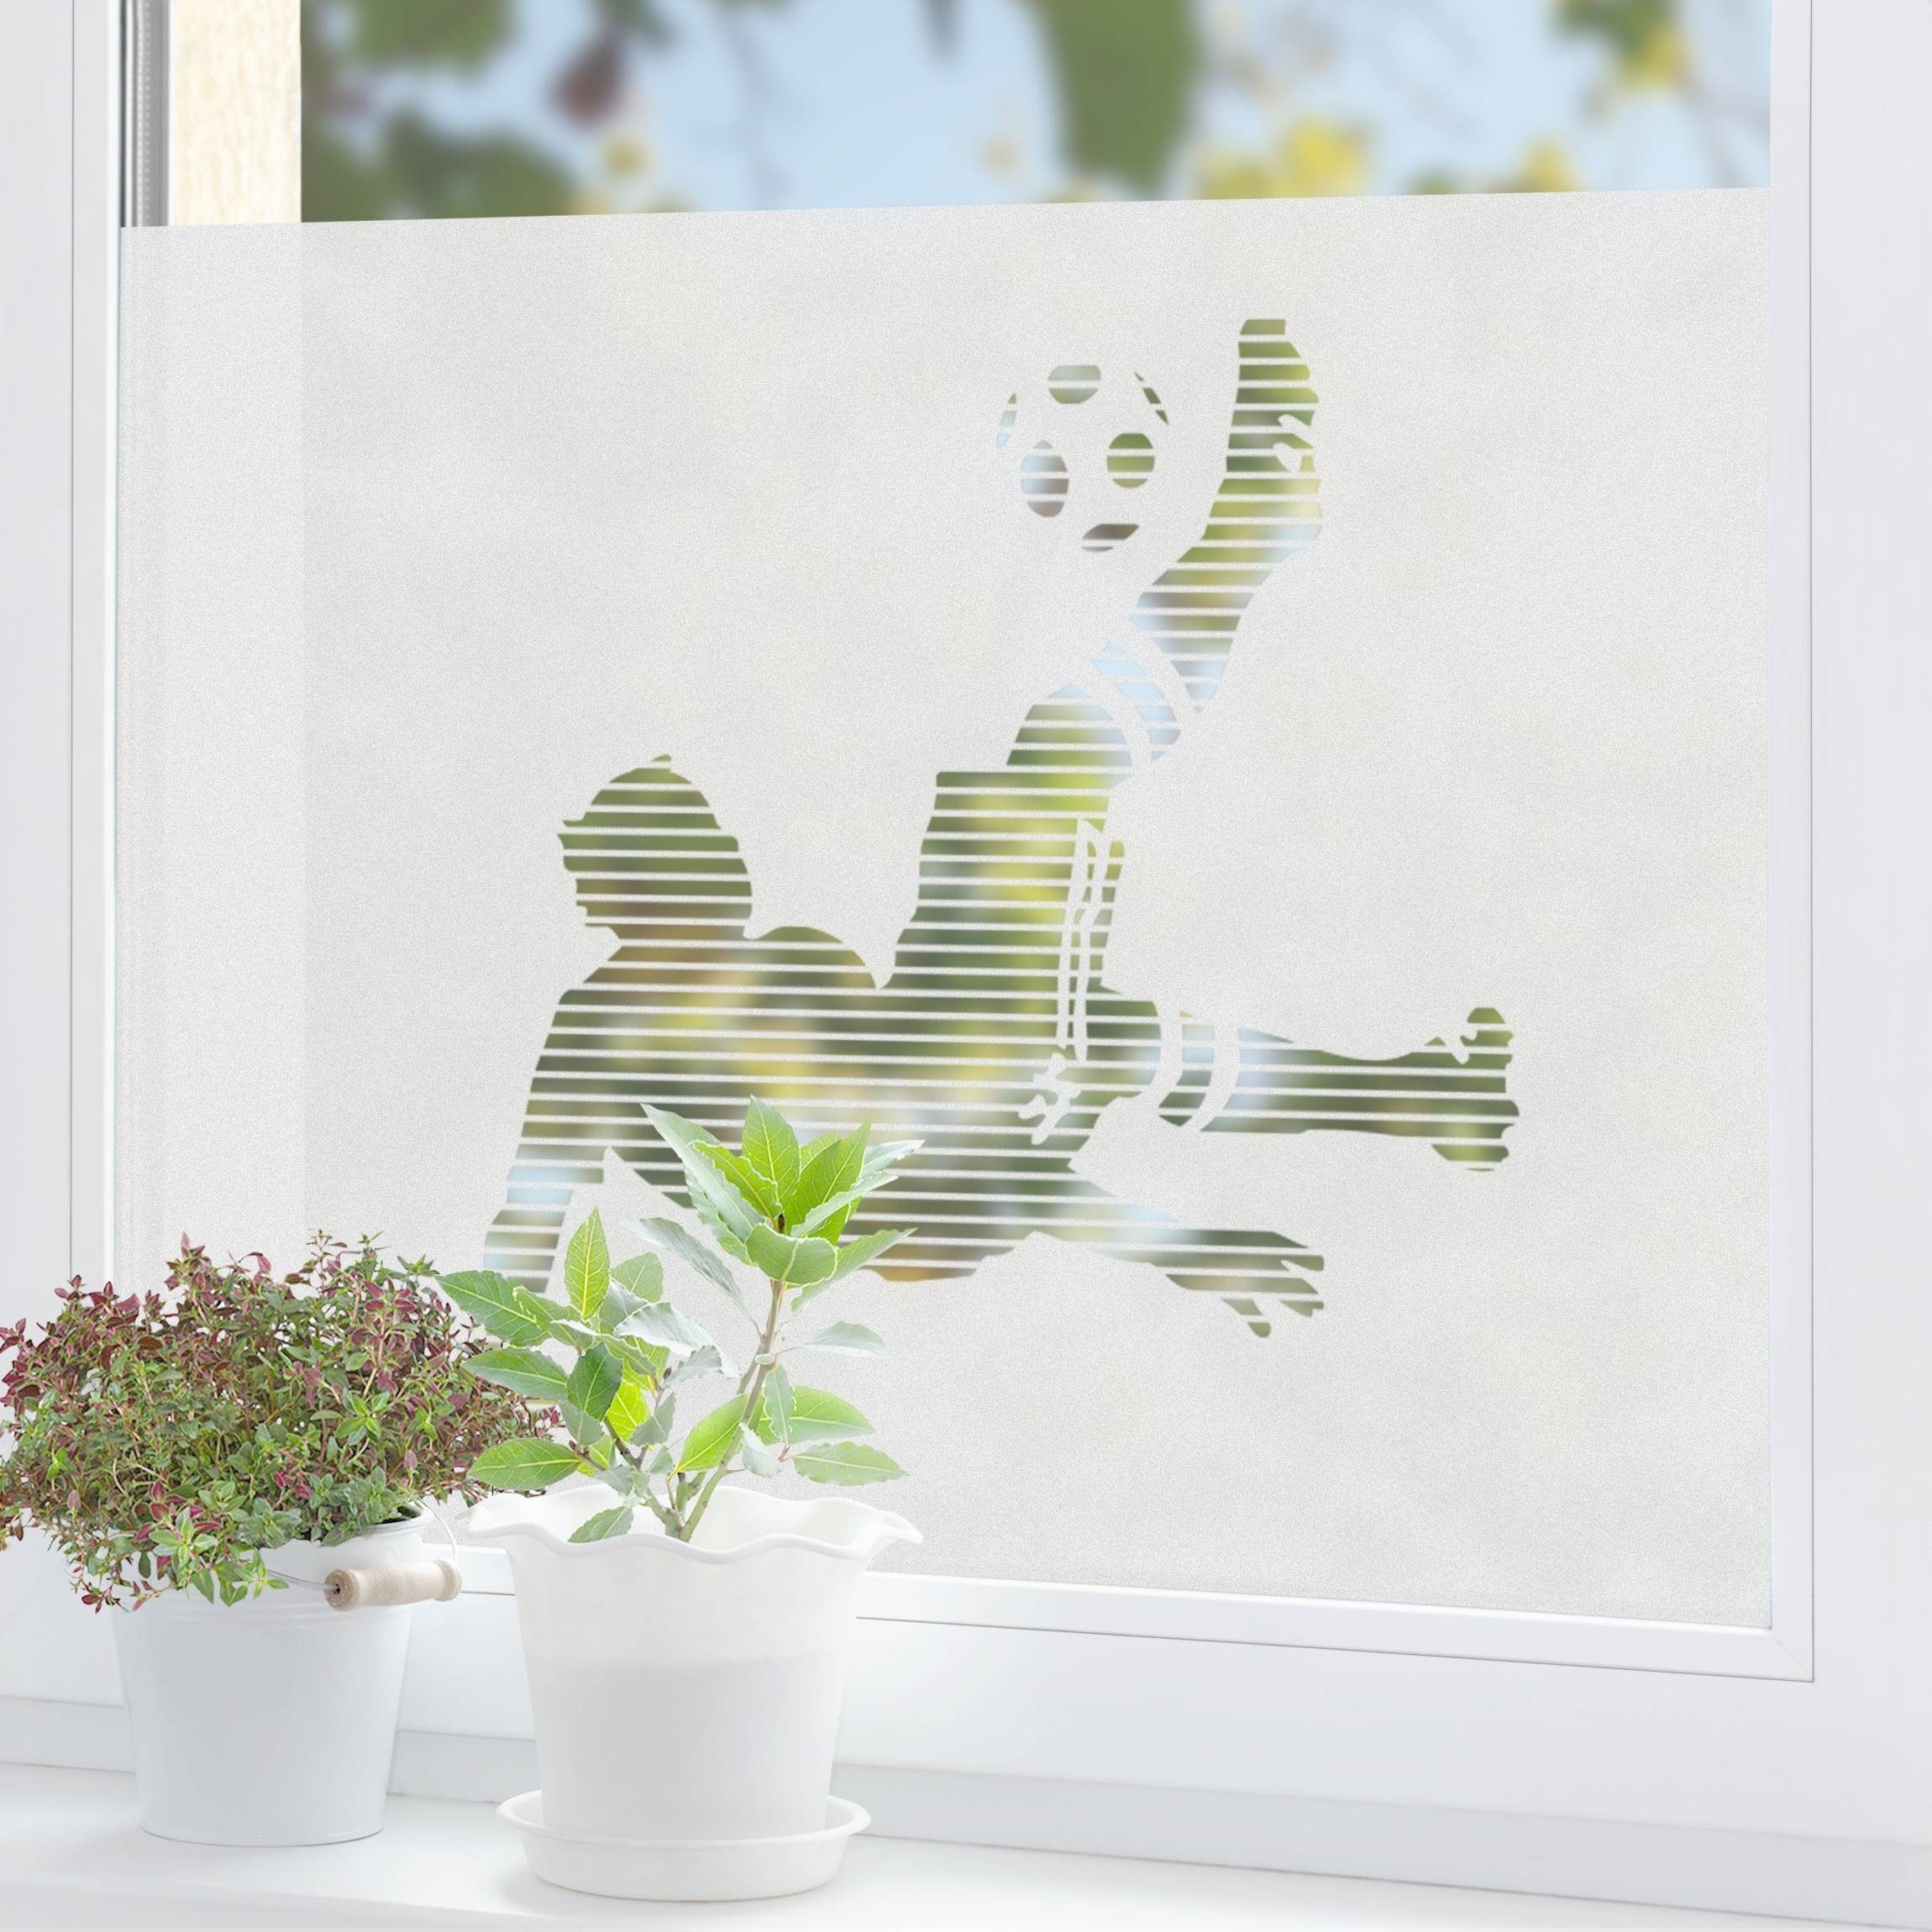 Randaco Sichtschutzfolie Bad Fenster Blickdicht Selbstklebend 3D